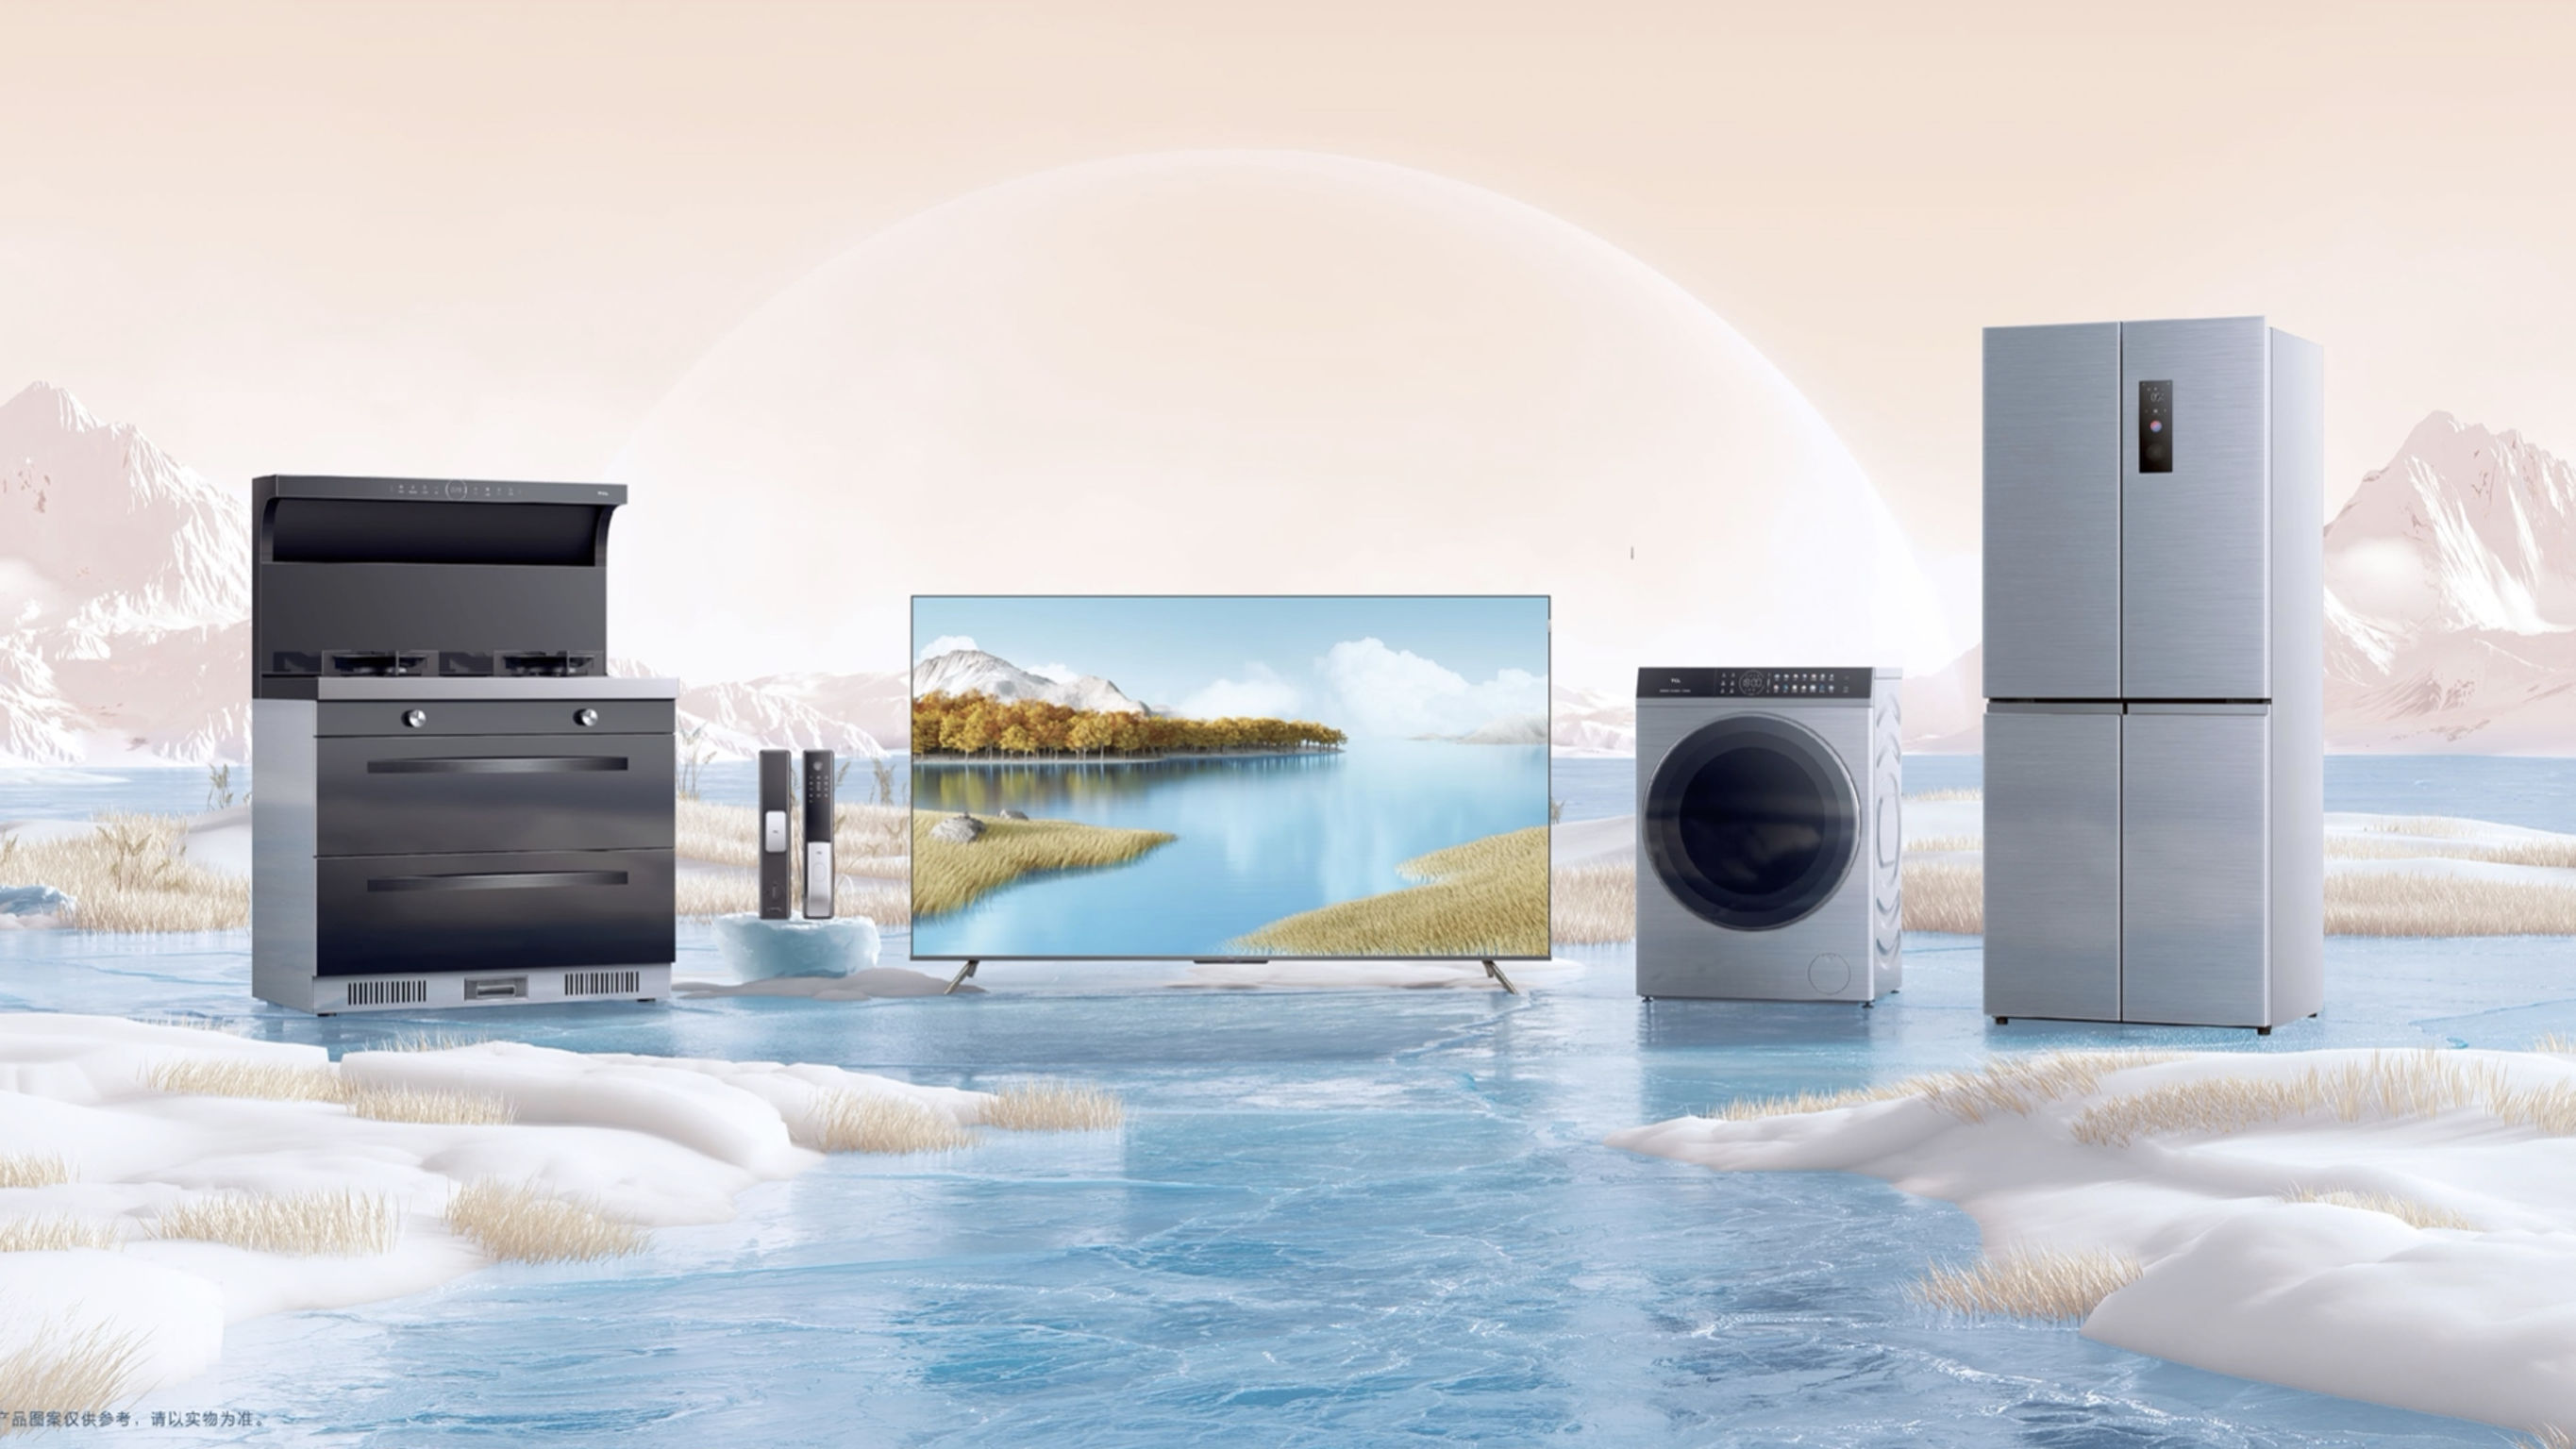 TCL P12 Full-set AIxIoT Home Appliances Promotion